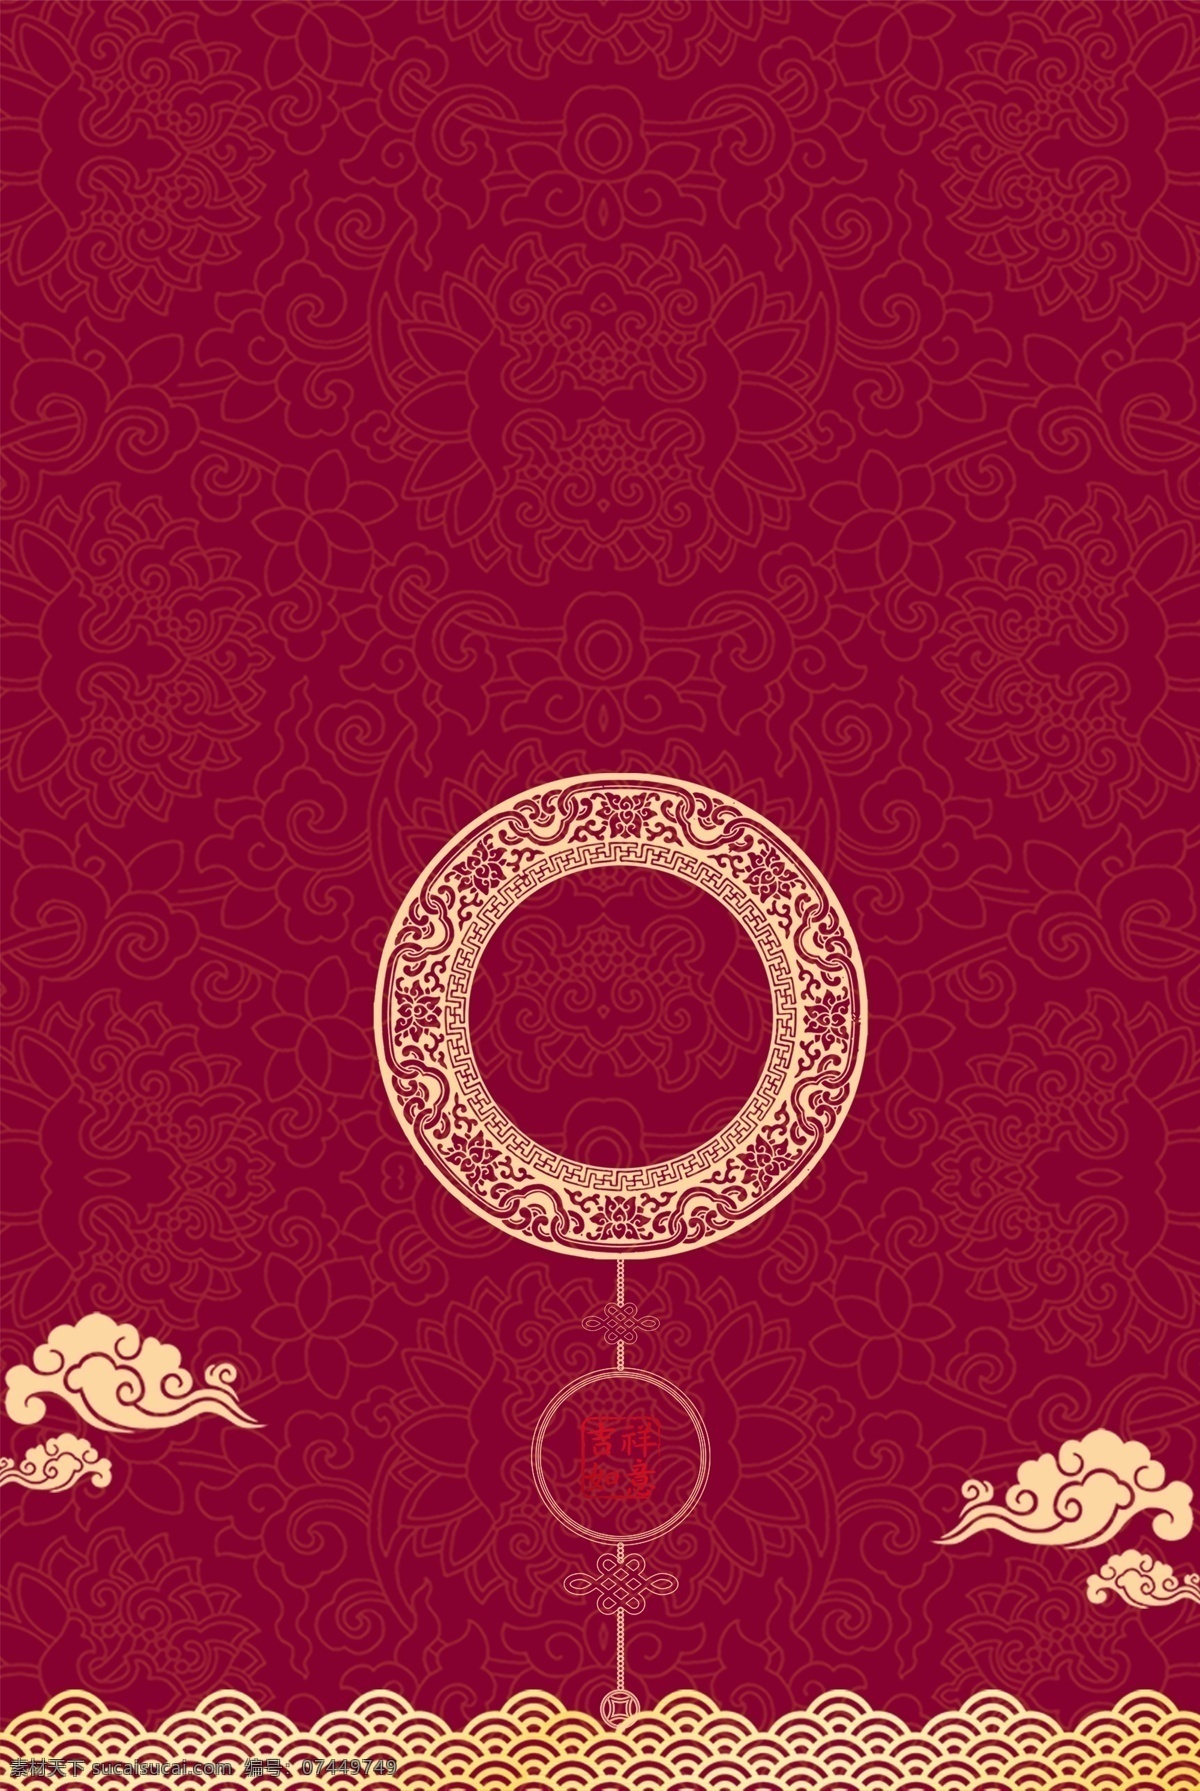 红色 中 国风 新年 开门红 海报 背景 开工大吉 中国风 简约 中式 金色 烫金 底纹 质感